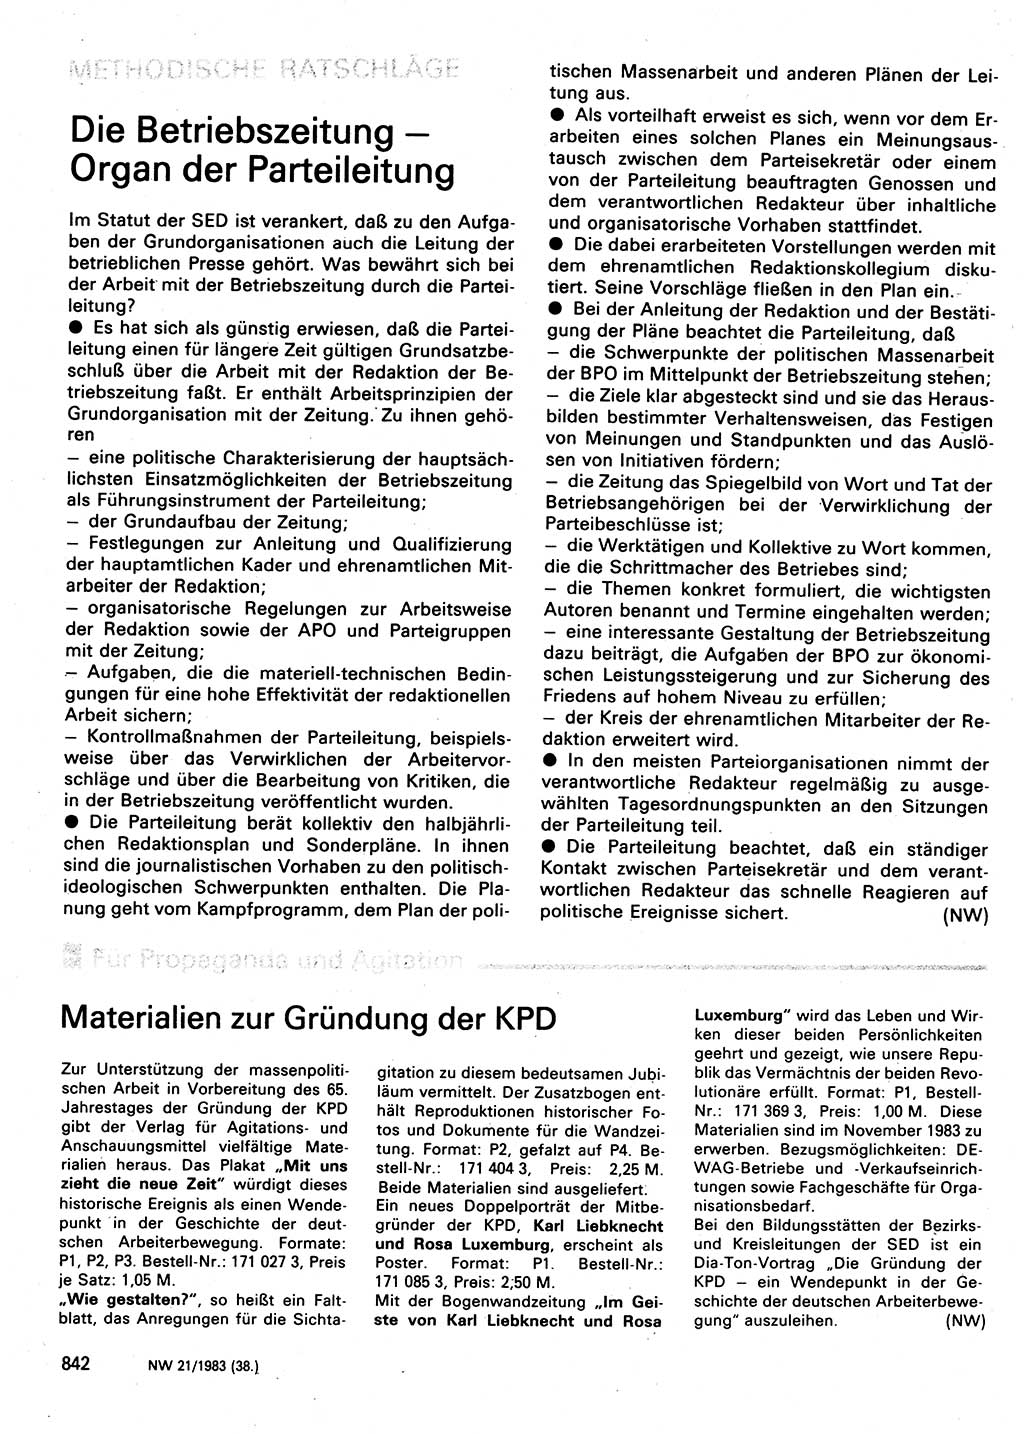 Neuer Weg (NW), Organ des Zentralkomitees (ZK) der SED (Sozialistische Einheitspartei Deutschlands) für Fragen des Parteilebens, 38. Jahrgang [Deutsche Demokratische Republik (DDR)] 1983, Seite 842 (NW ZK SED DDR 1983, S. 842)